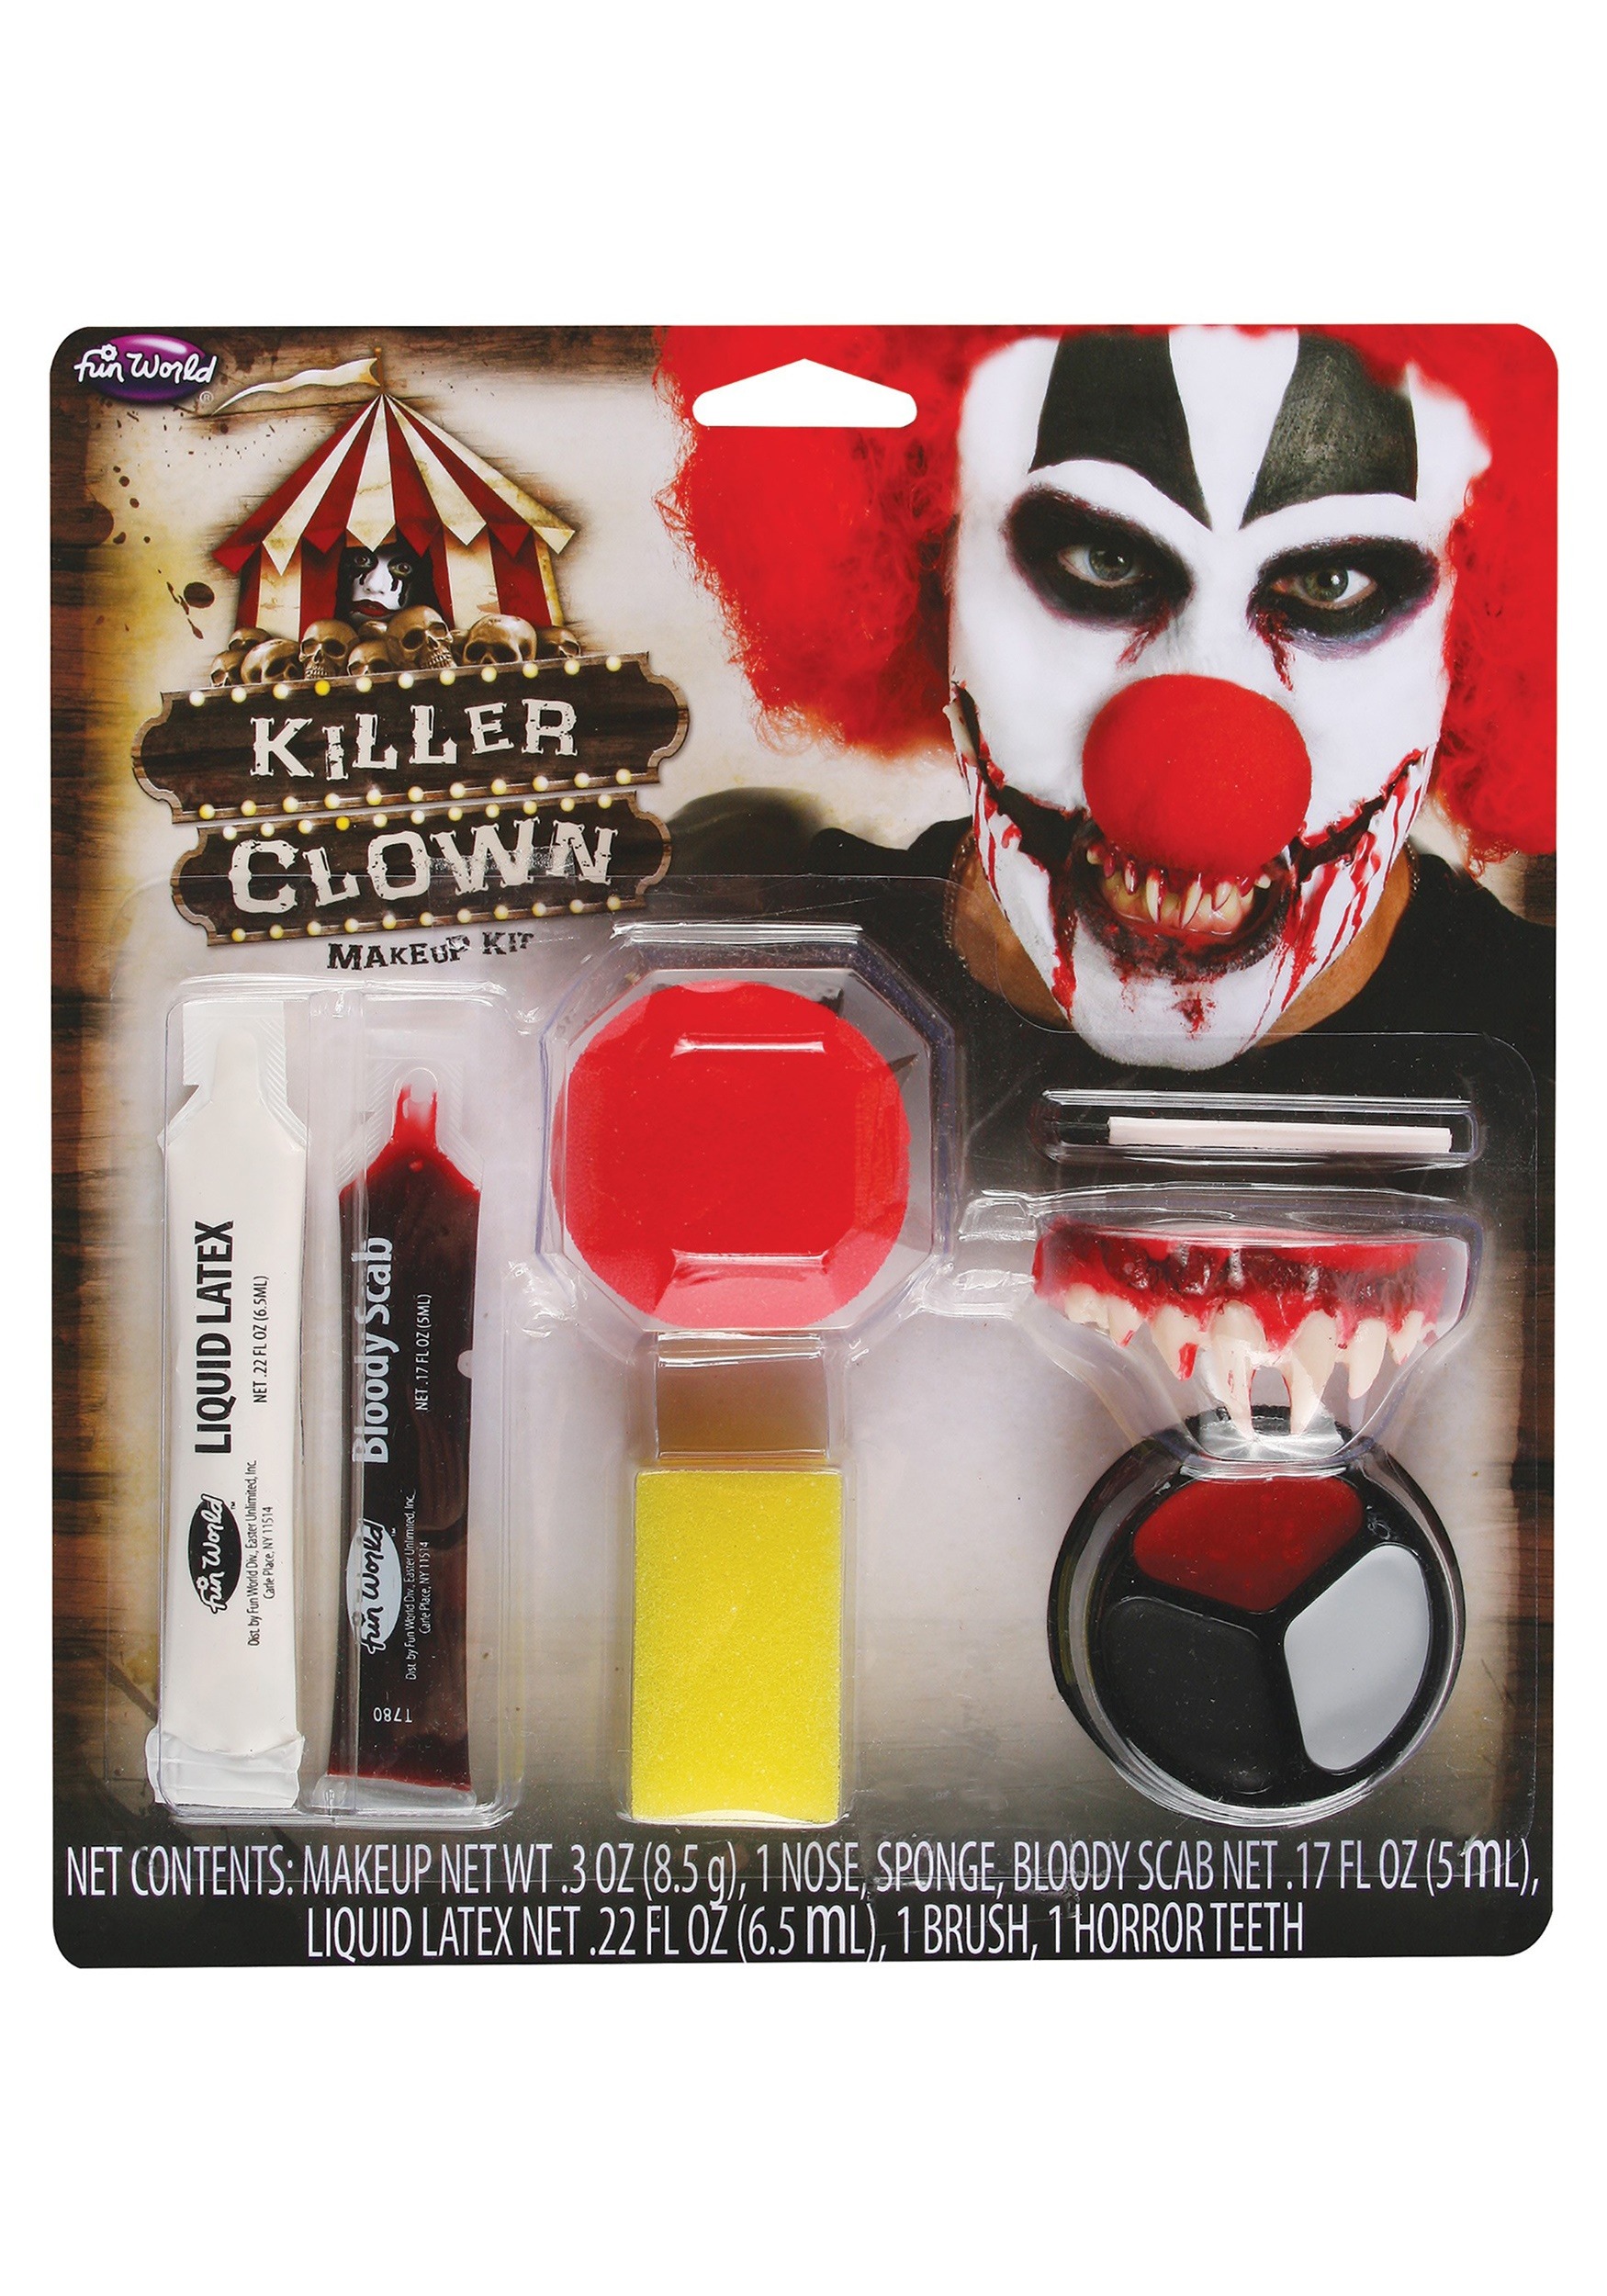 Fun World Killer Clown Makeup Kit